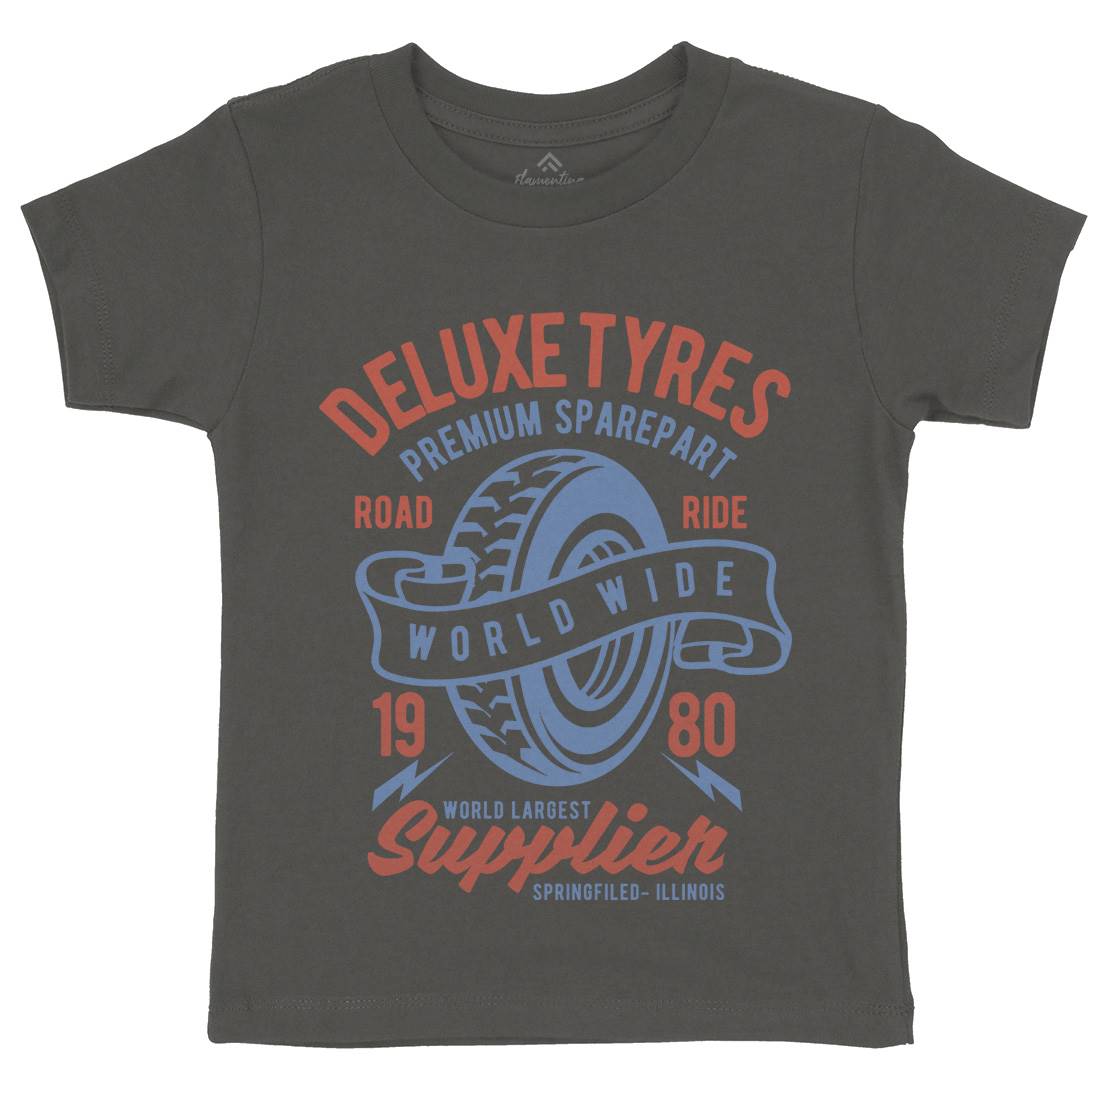 Deluxe Tyres Kids Crew Neck T-Shirt Cars B204